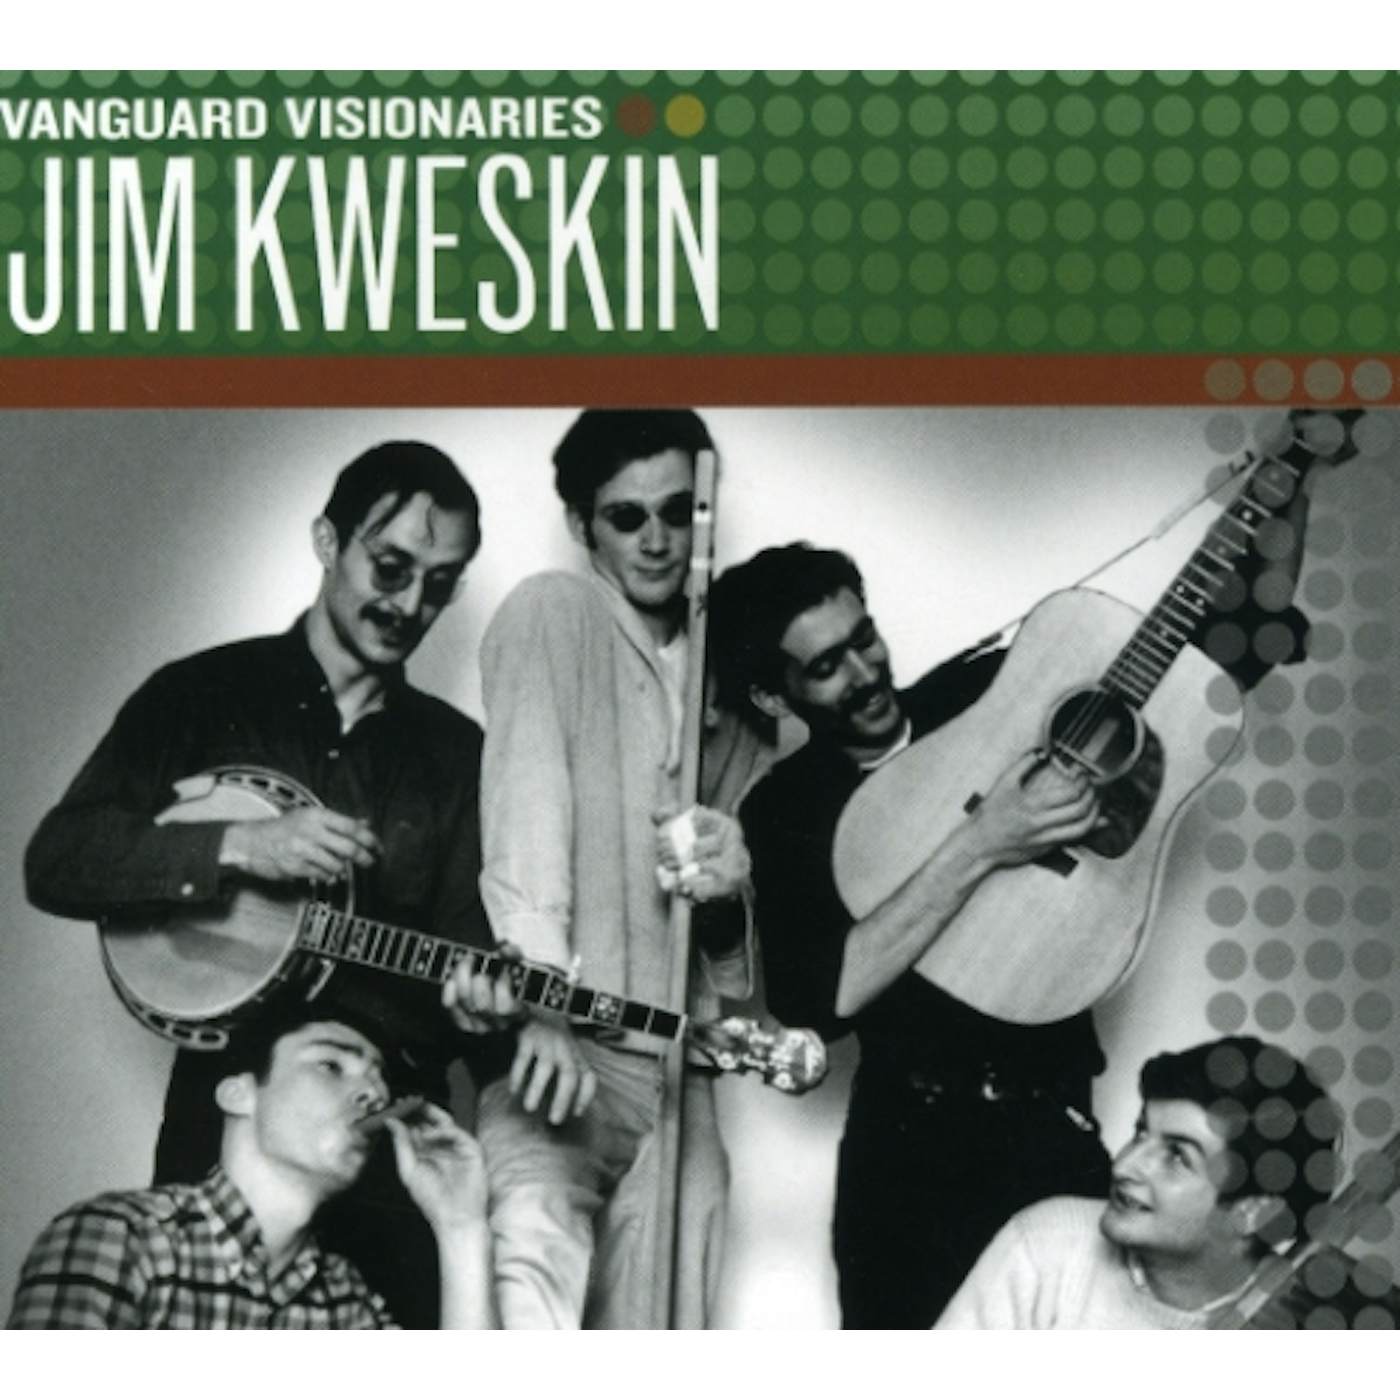 Jim Kweskin VANGUARD VISIONARIES CD